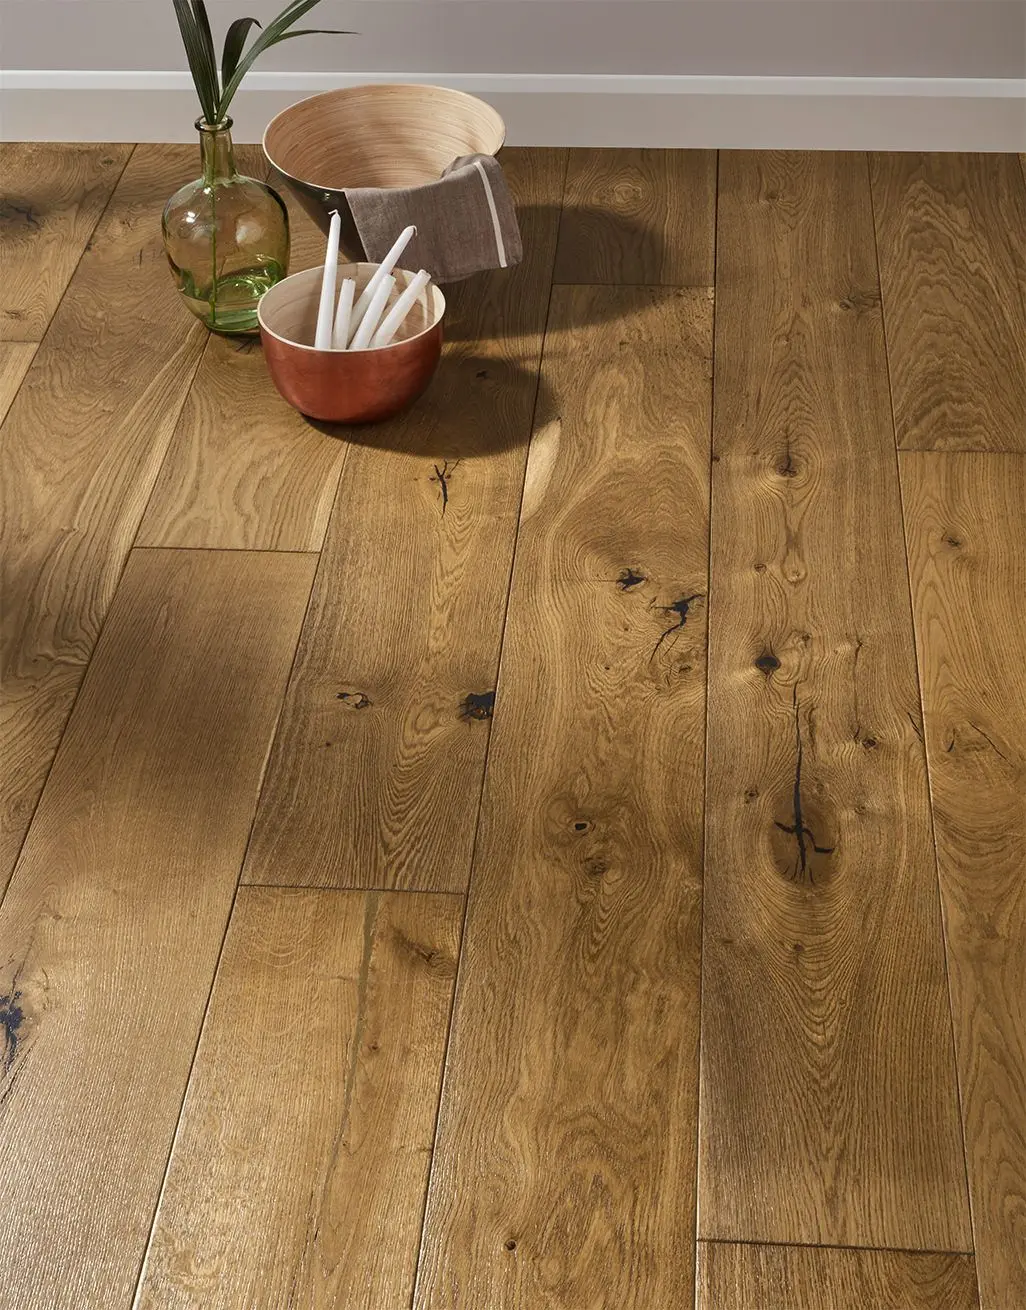 smoked oak flooring uk - Is oak flooring still in style